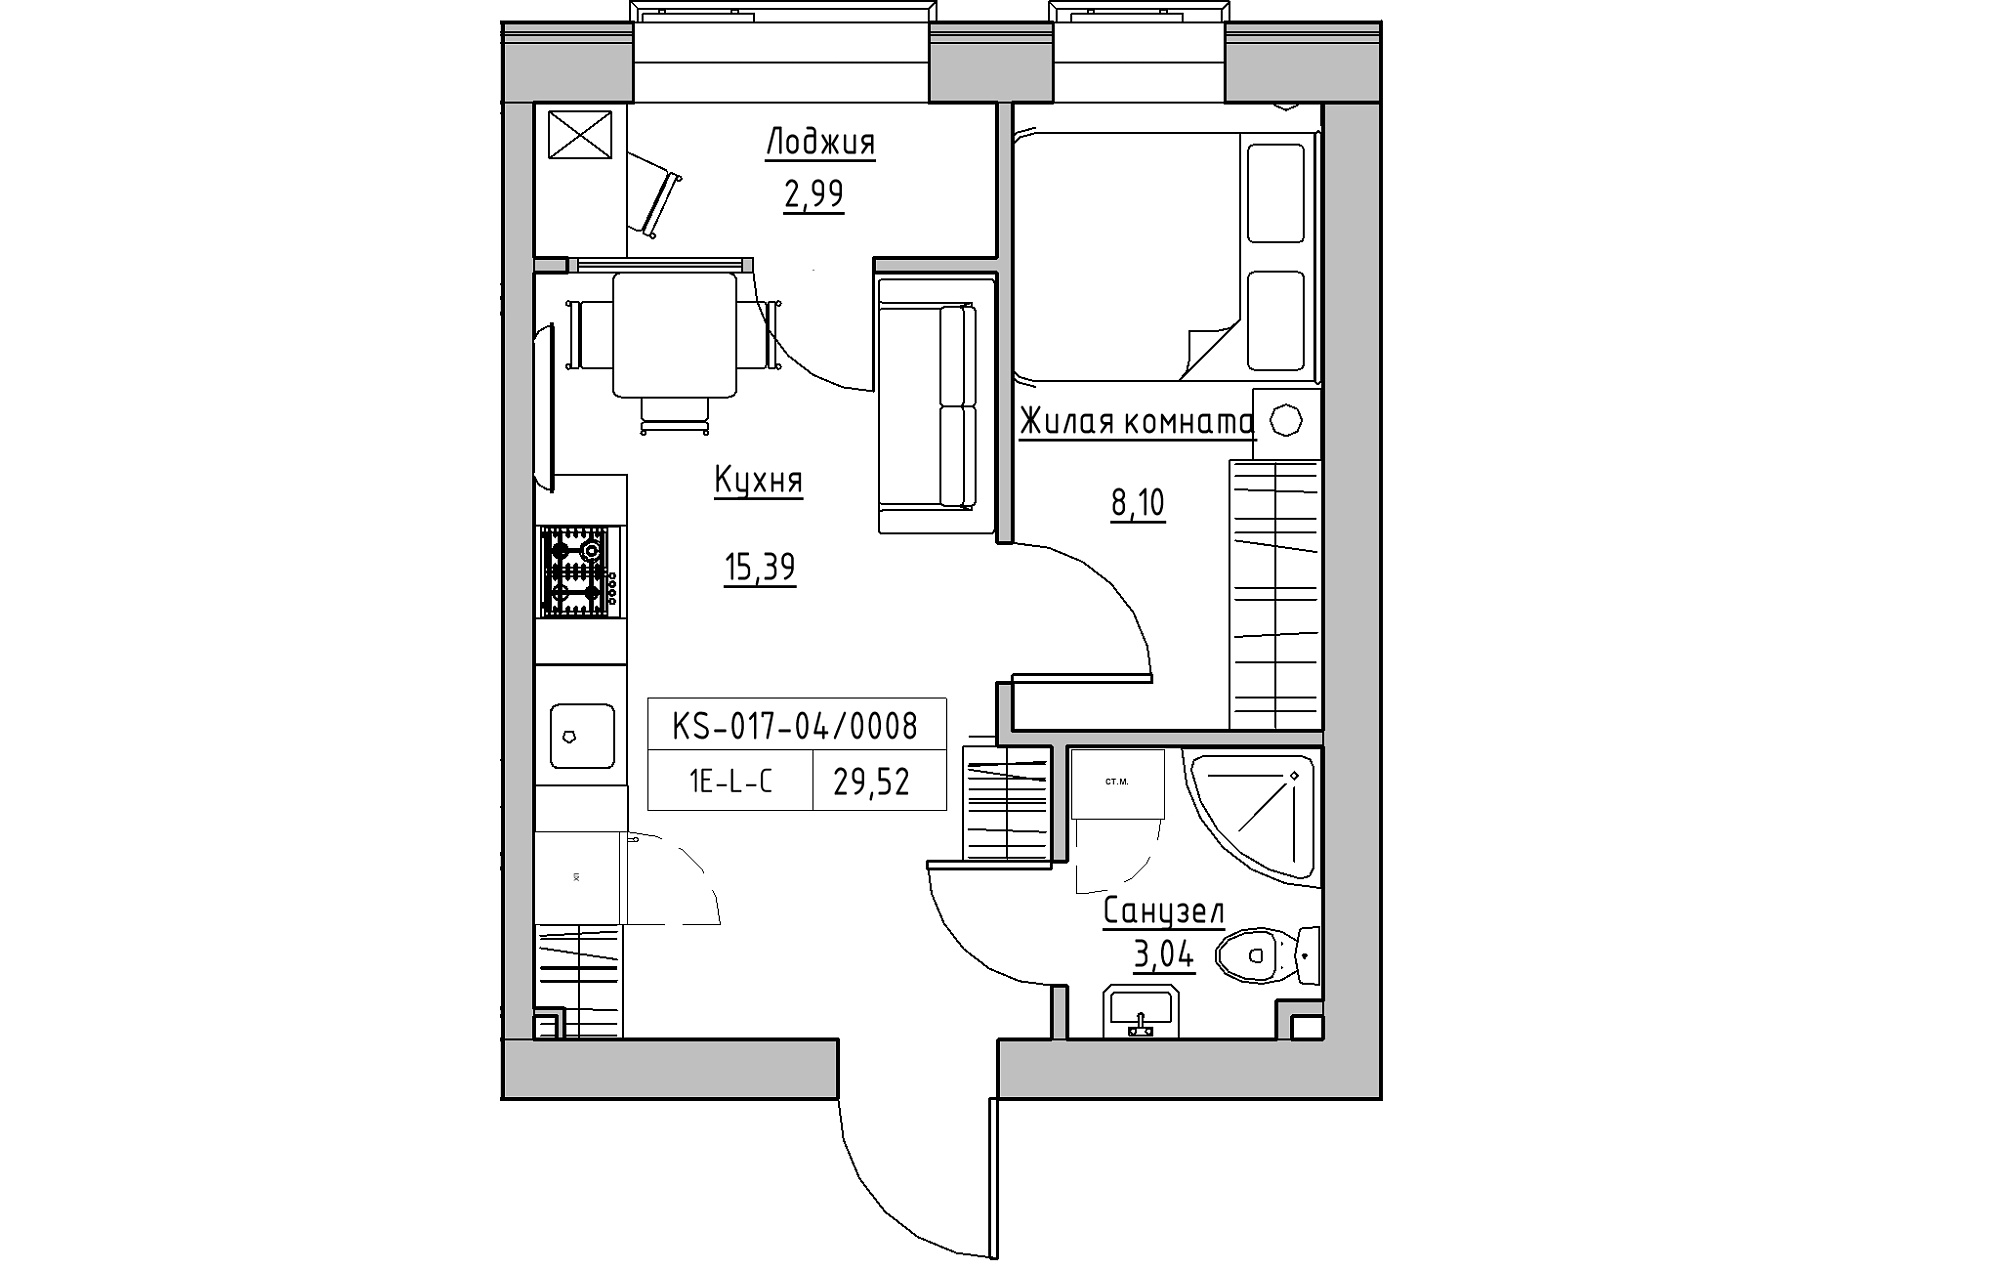 Планировка 1-к квартира площей 29.52м2, KS-017-04/0008.